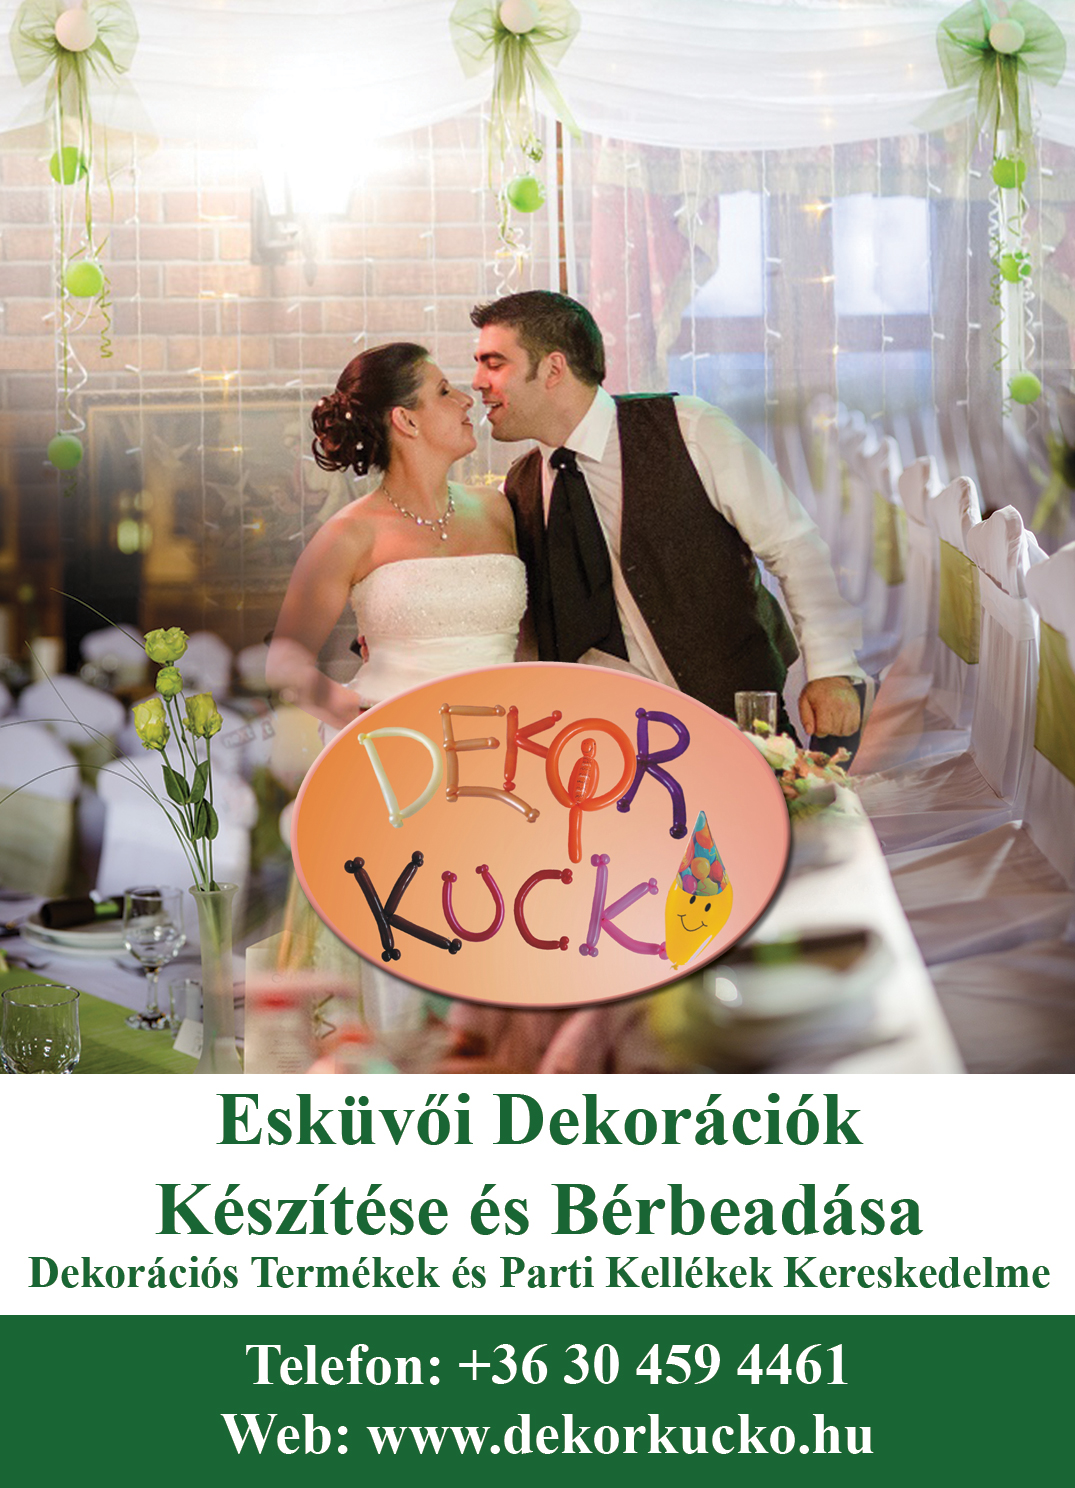 Dekor Kuckő - 2016 - Esküvő katalógus